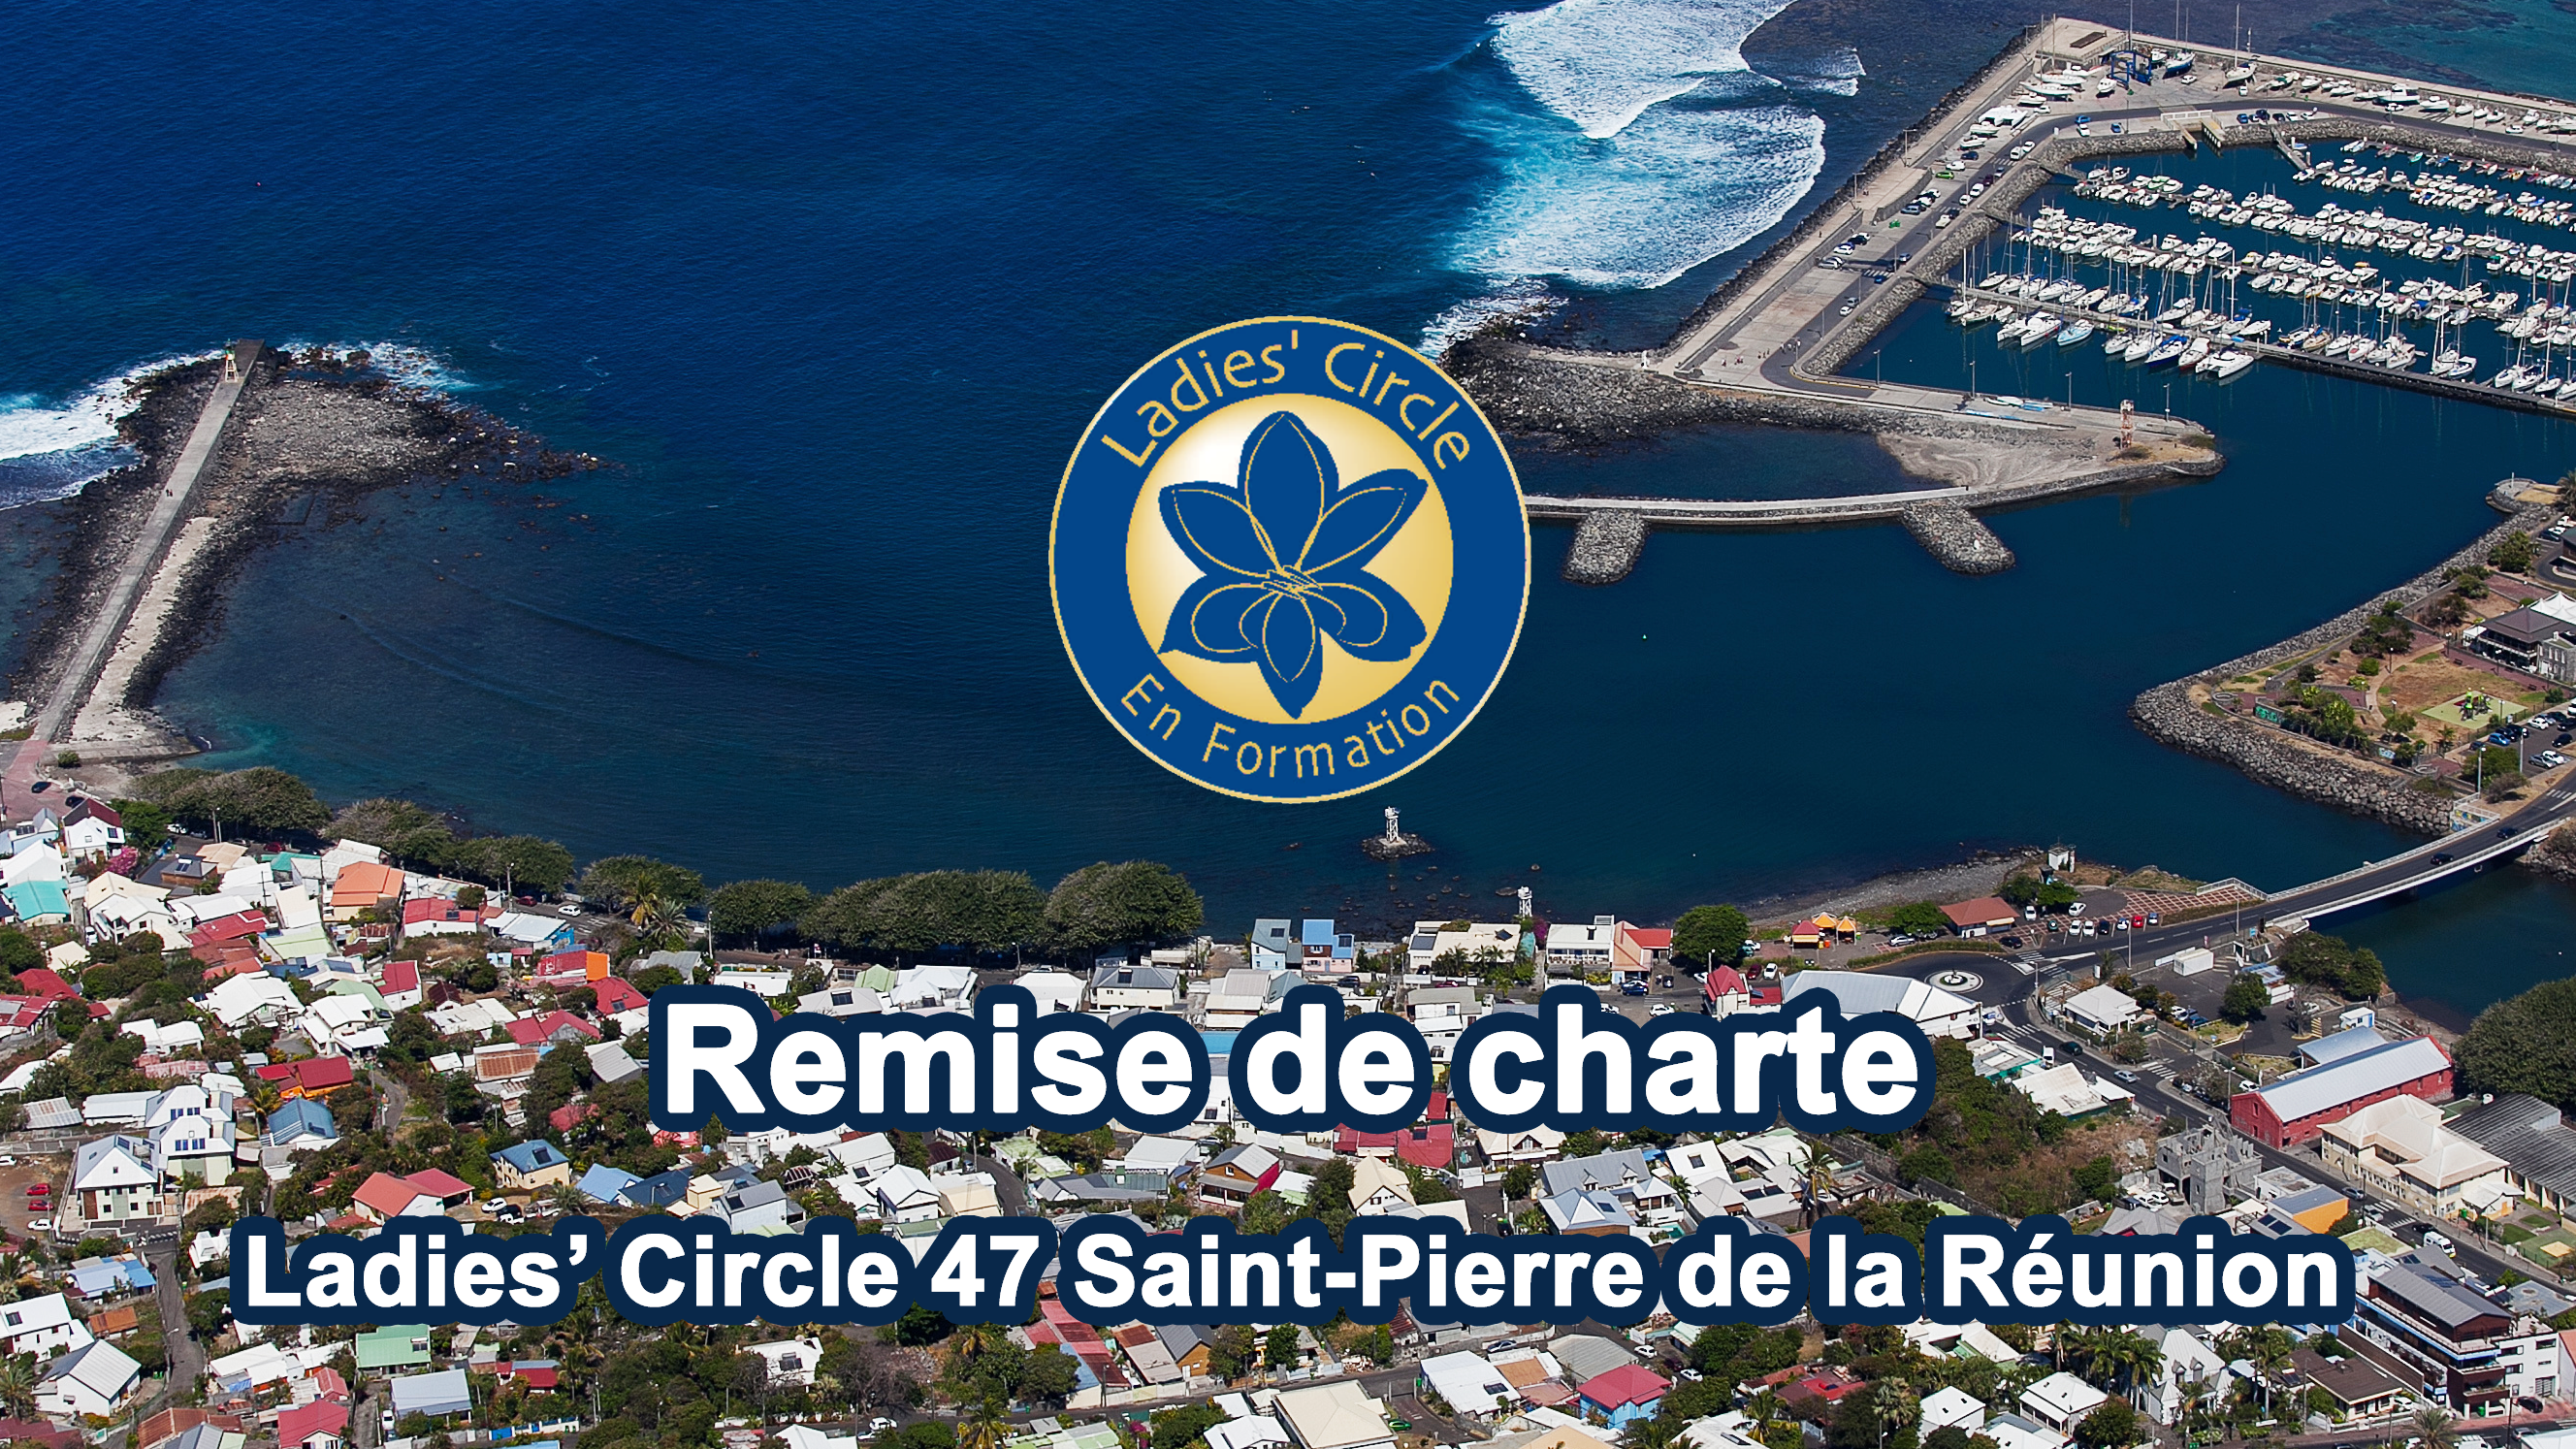 Remise de charte Saint-Pierre de la Réunion